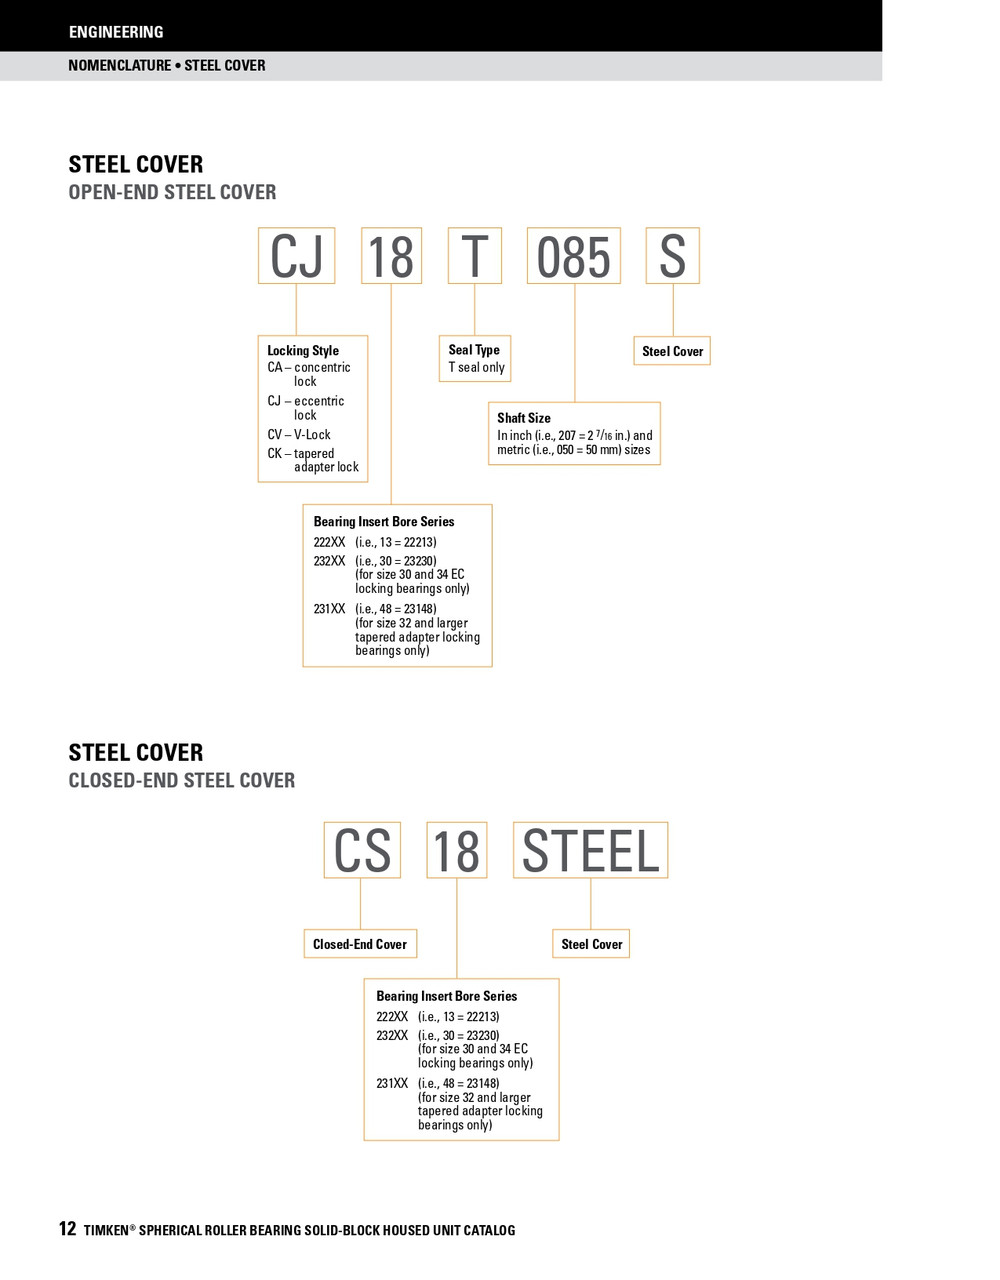 4-3/16" Timken SRB Steel Open End Cover w/Teflon Seal - TA/DV Taper Lock Bushing Type  CK24T403S